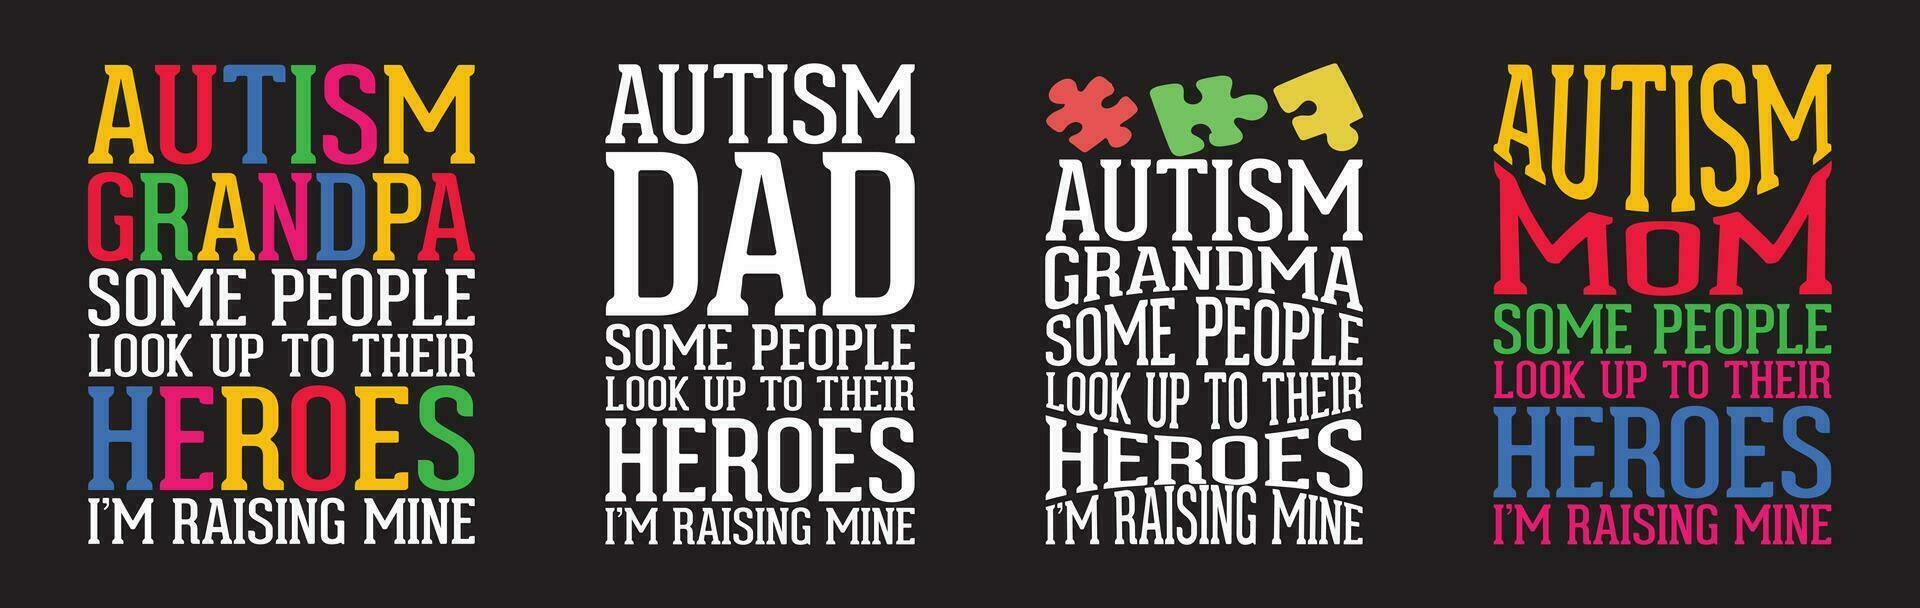 autisme t overhemd ontwerp bundel, vector autisme t overhemd ontwerp, autisme shirt, autisme typografie t overhemd ontwerp verzameling